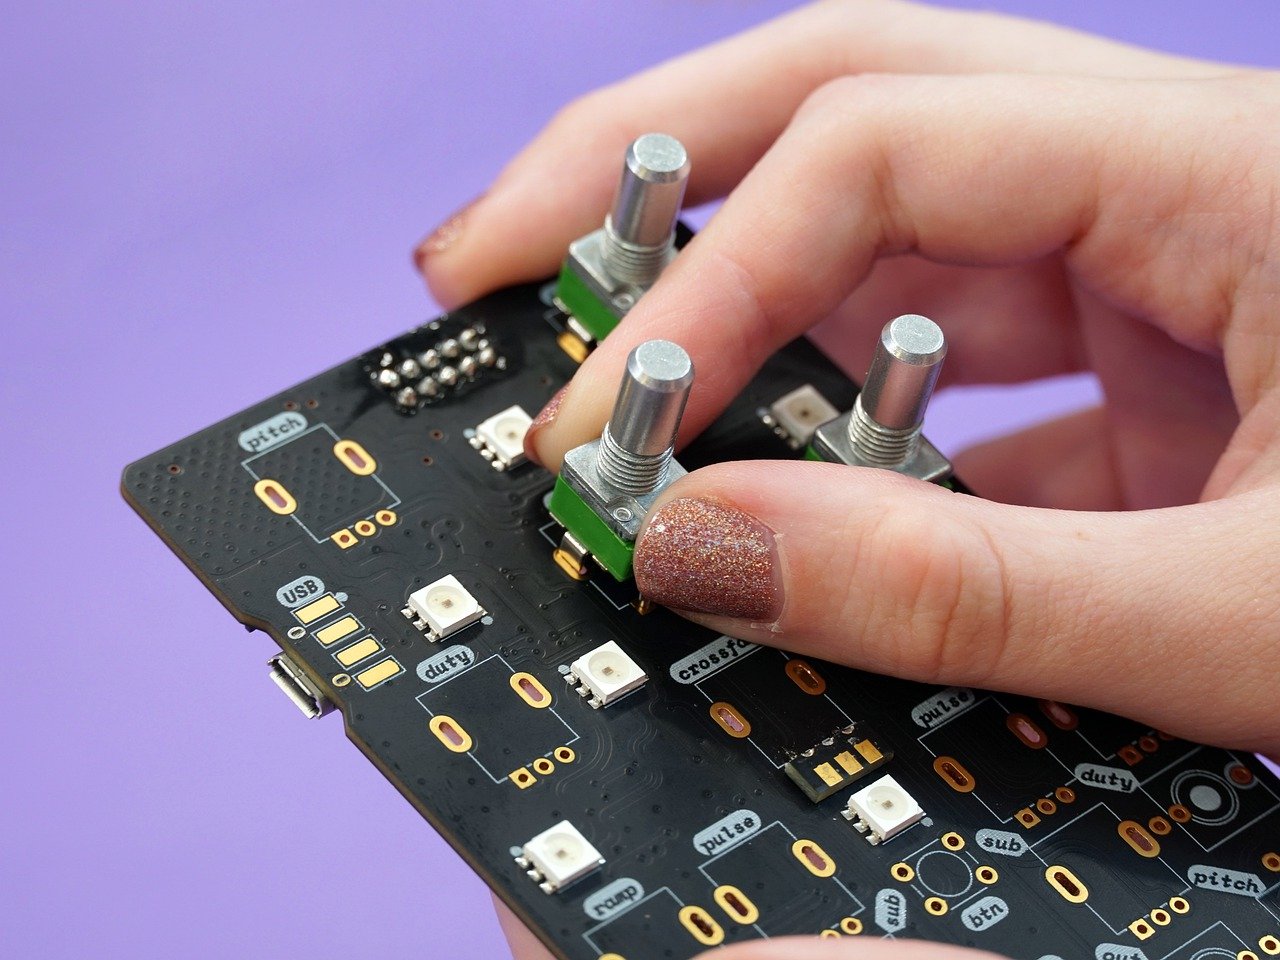 ¿Qué tecnologías de soldadura se utilizan para soldar los componentes en la tarjeta electrónica?